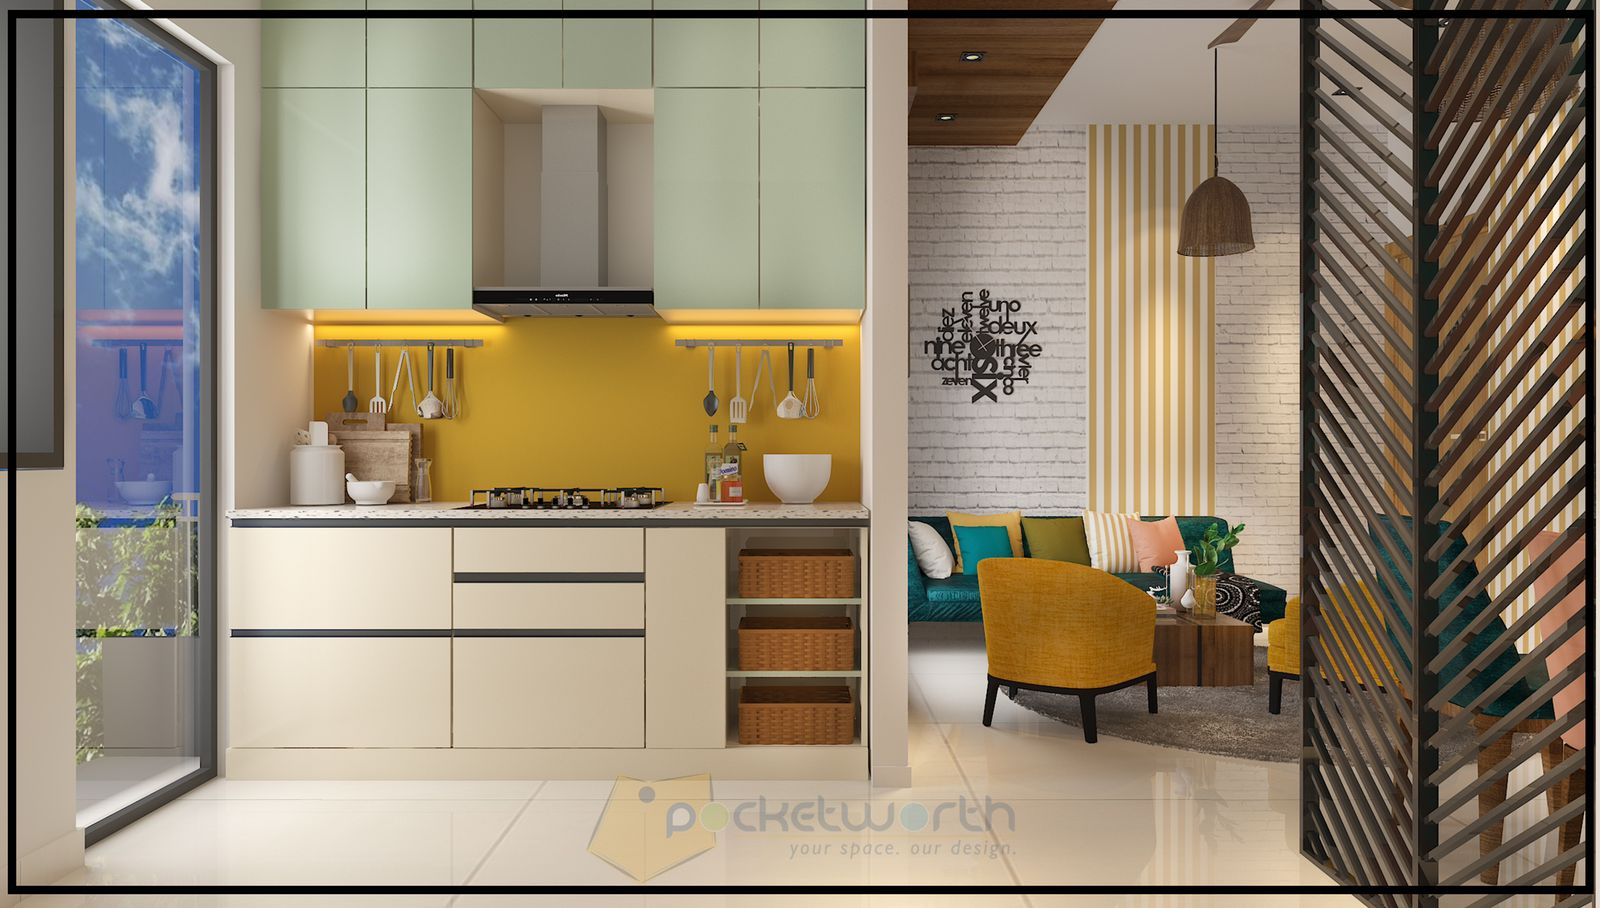 pocketworth-kitchen-design4